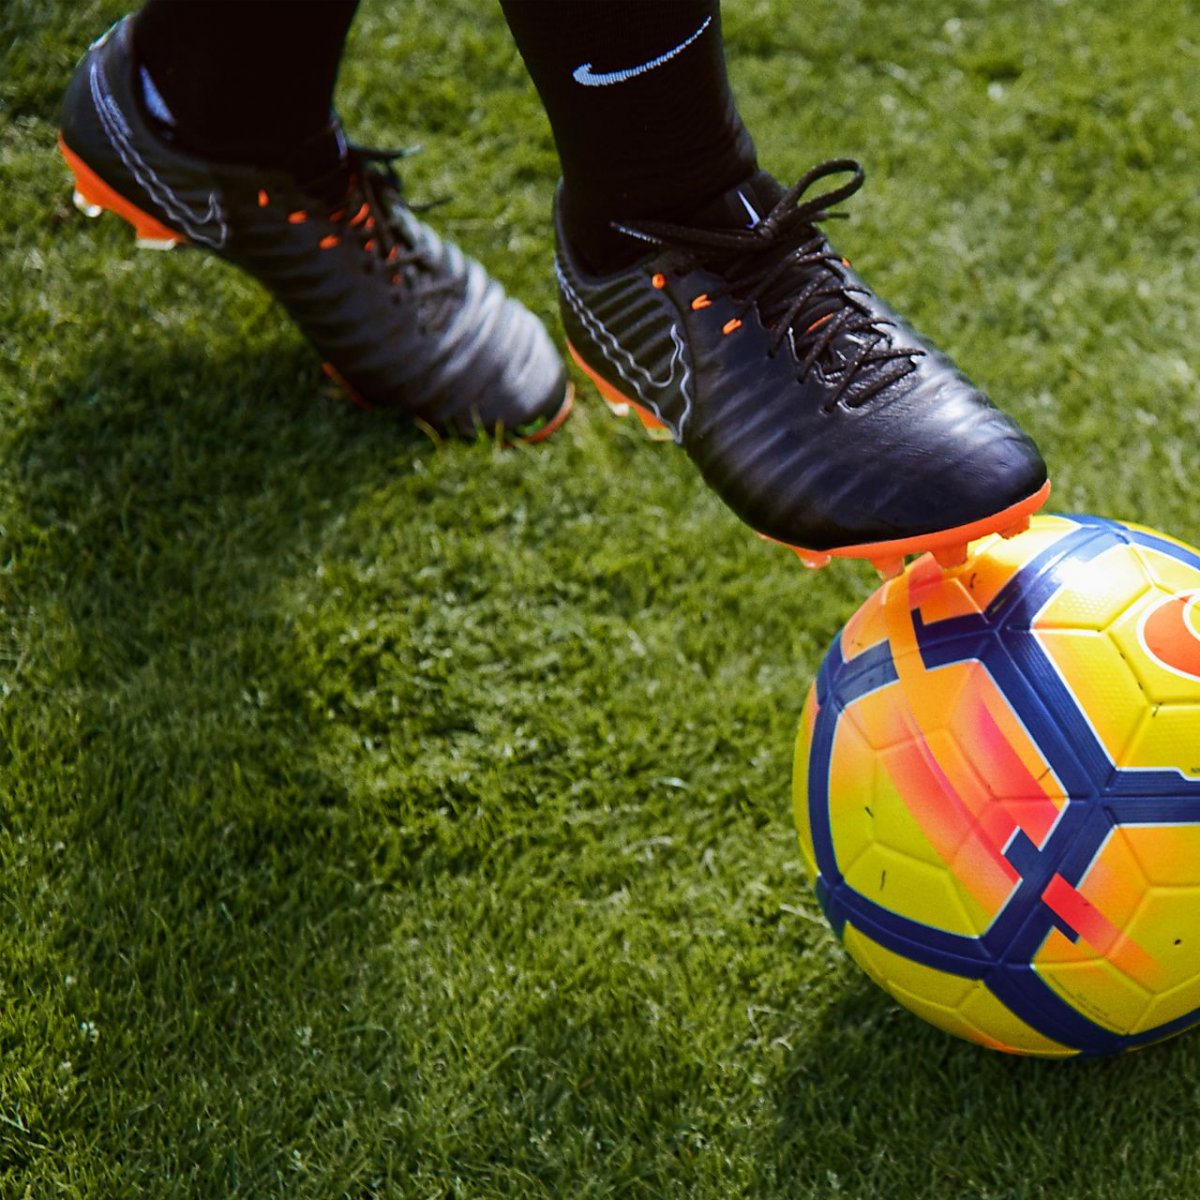 Футбольный мяч возле ног